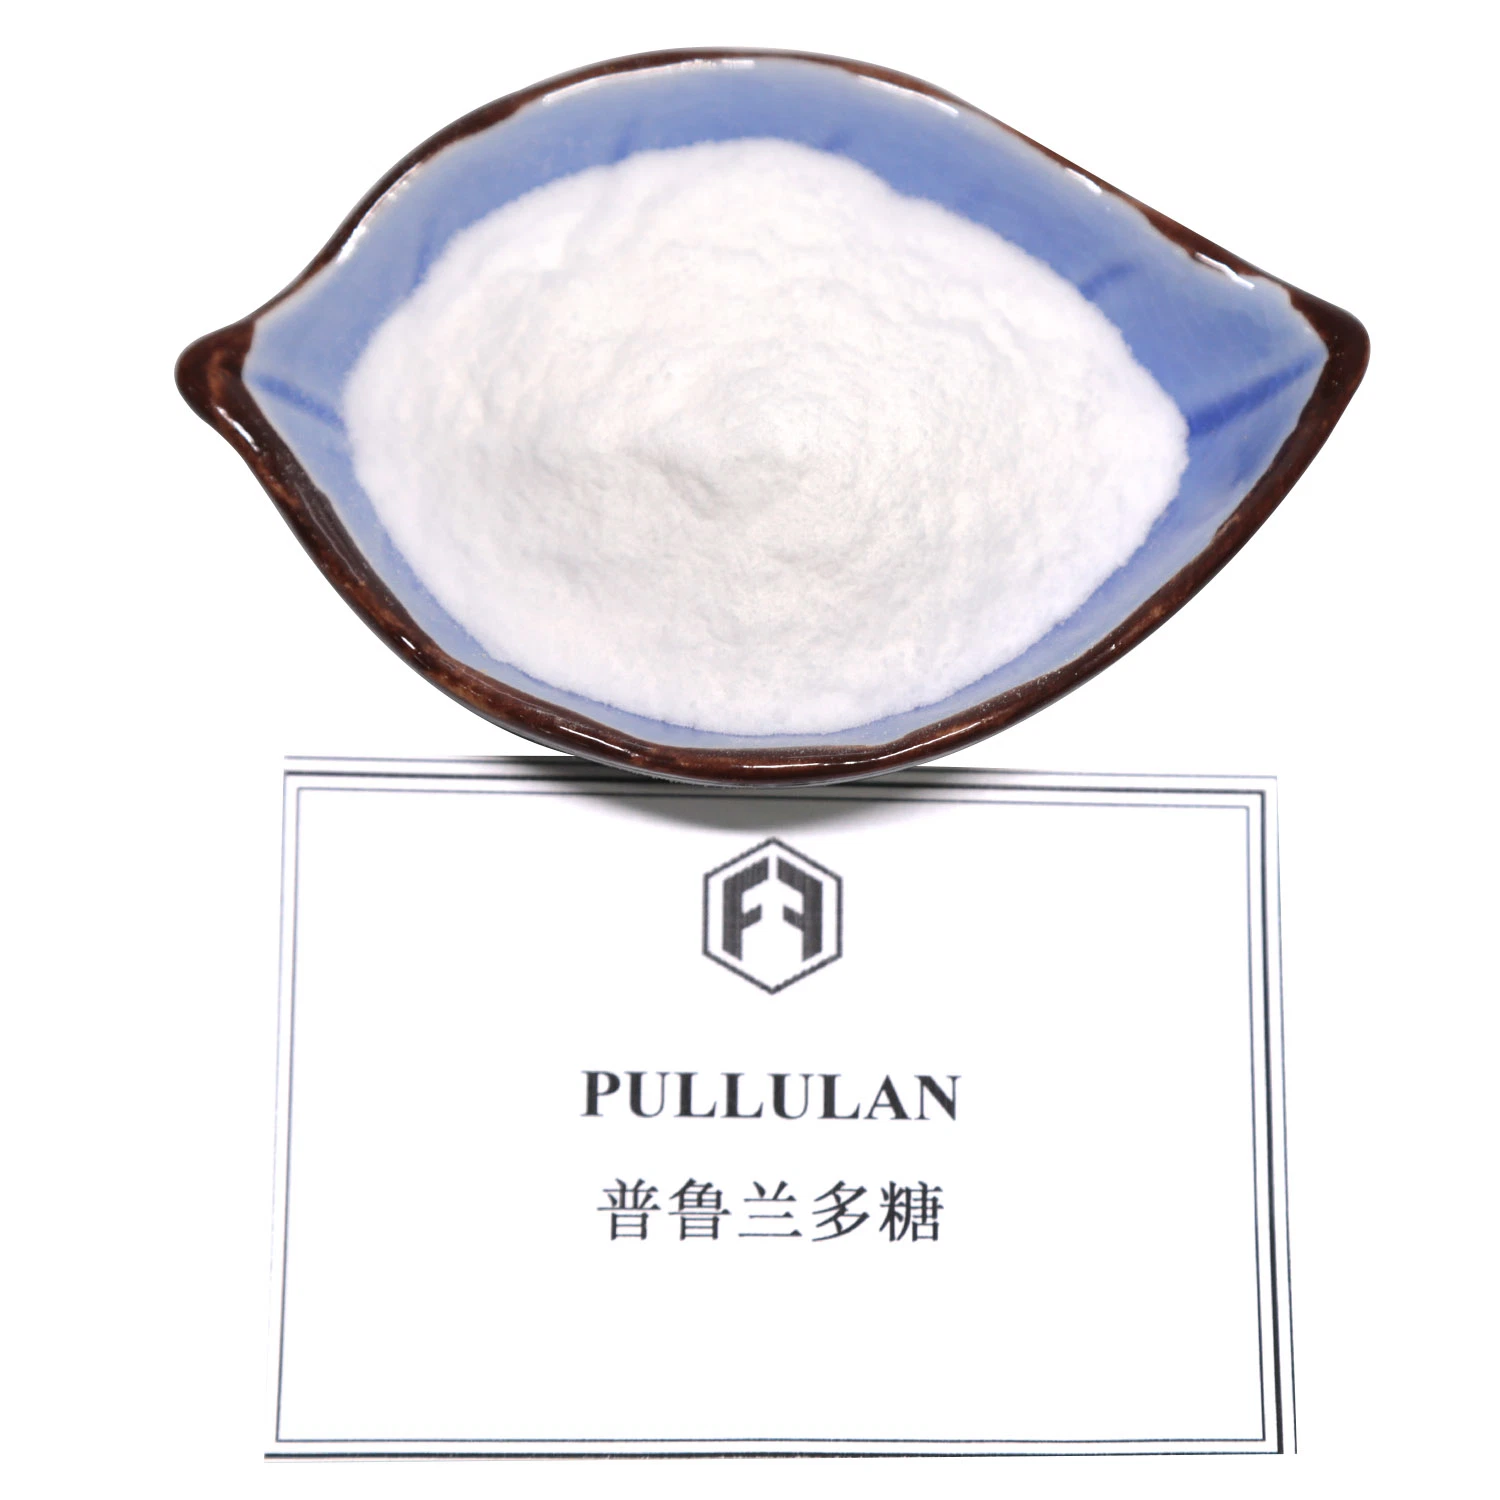 Pullulan широко используется в пищевой, легкой промышленности, химической промышленности и переработки нефти и других областях.